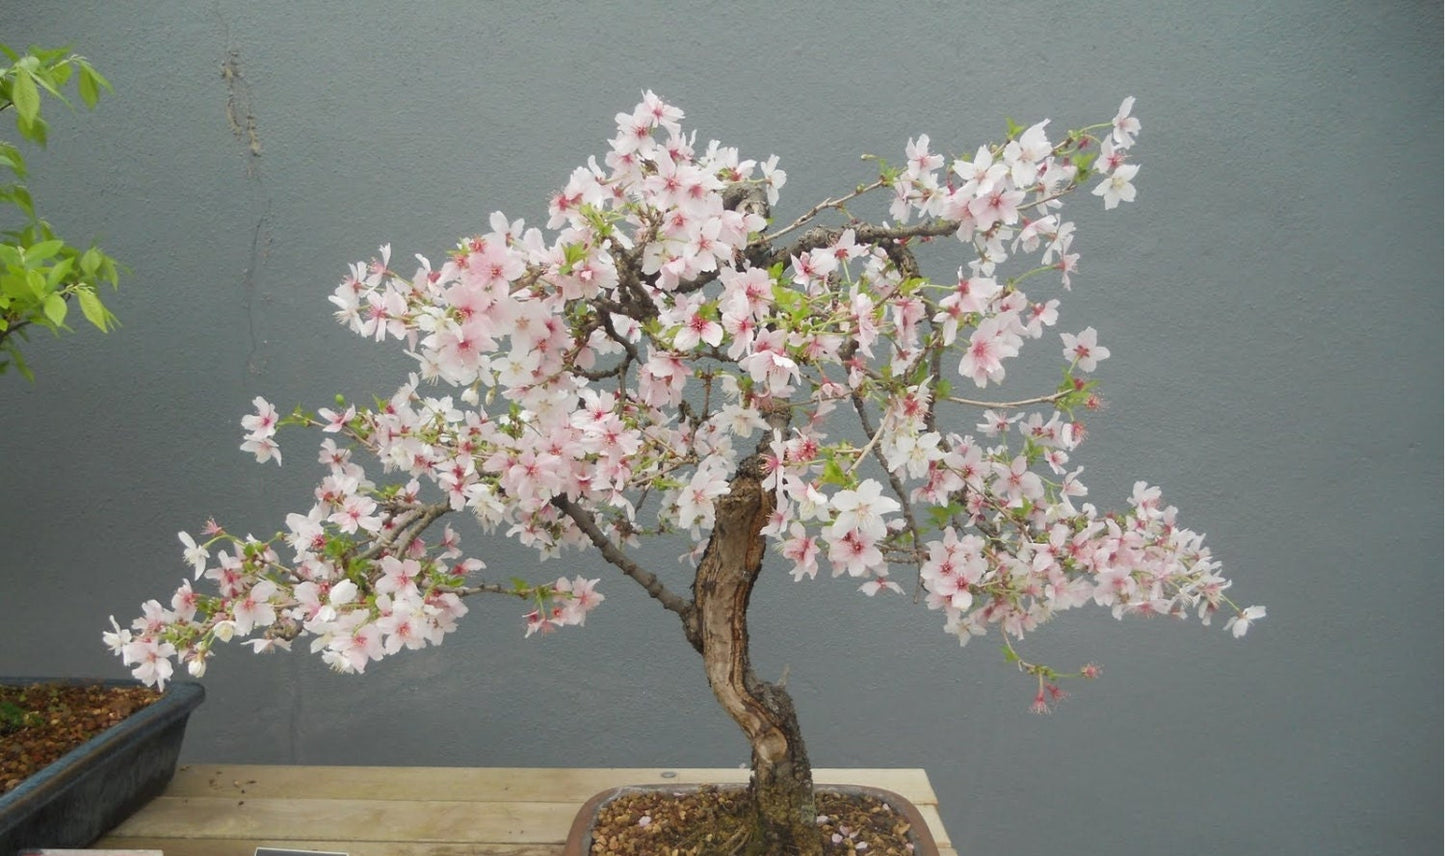 Prunus Avium * Wild Cherry * Gean * Flowering Cherry Bonsai Tree * 5 Seed *